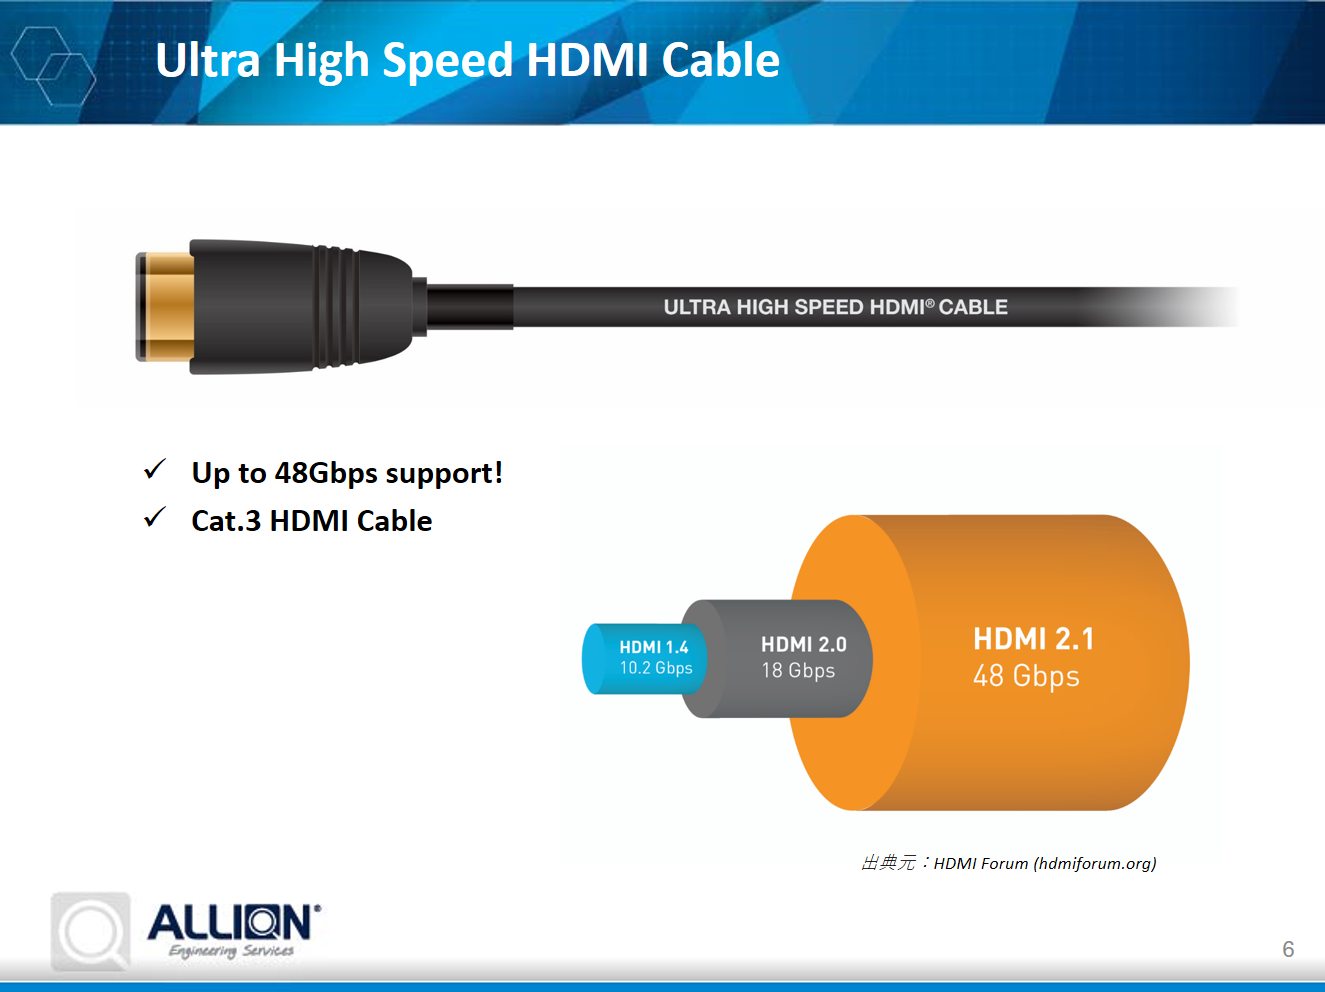 HDMI 1.4A2.0A2.1ƐiɂāA`[gĂ oTFAIiNbNŊgj